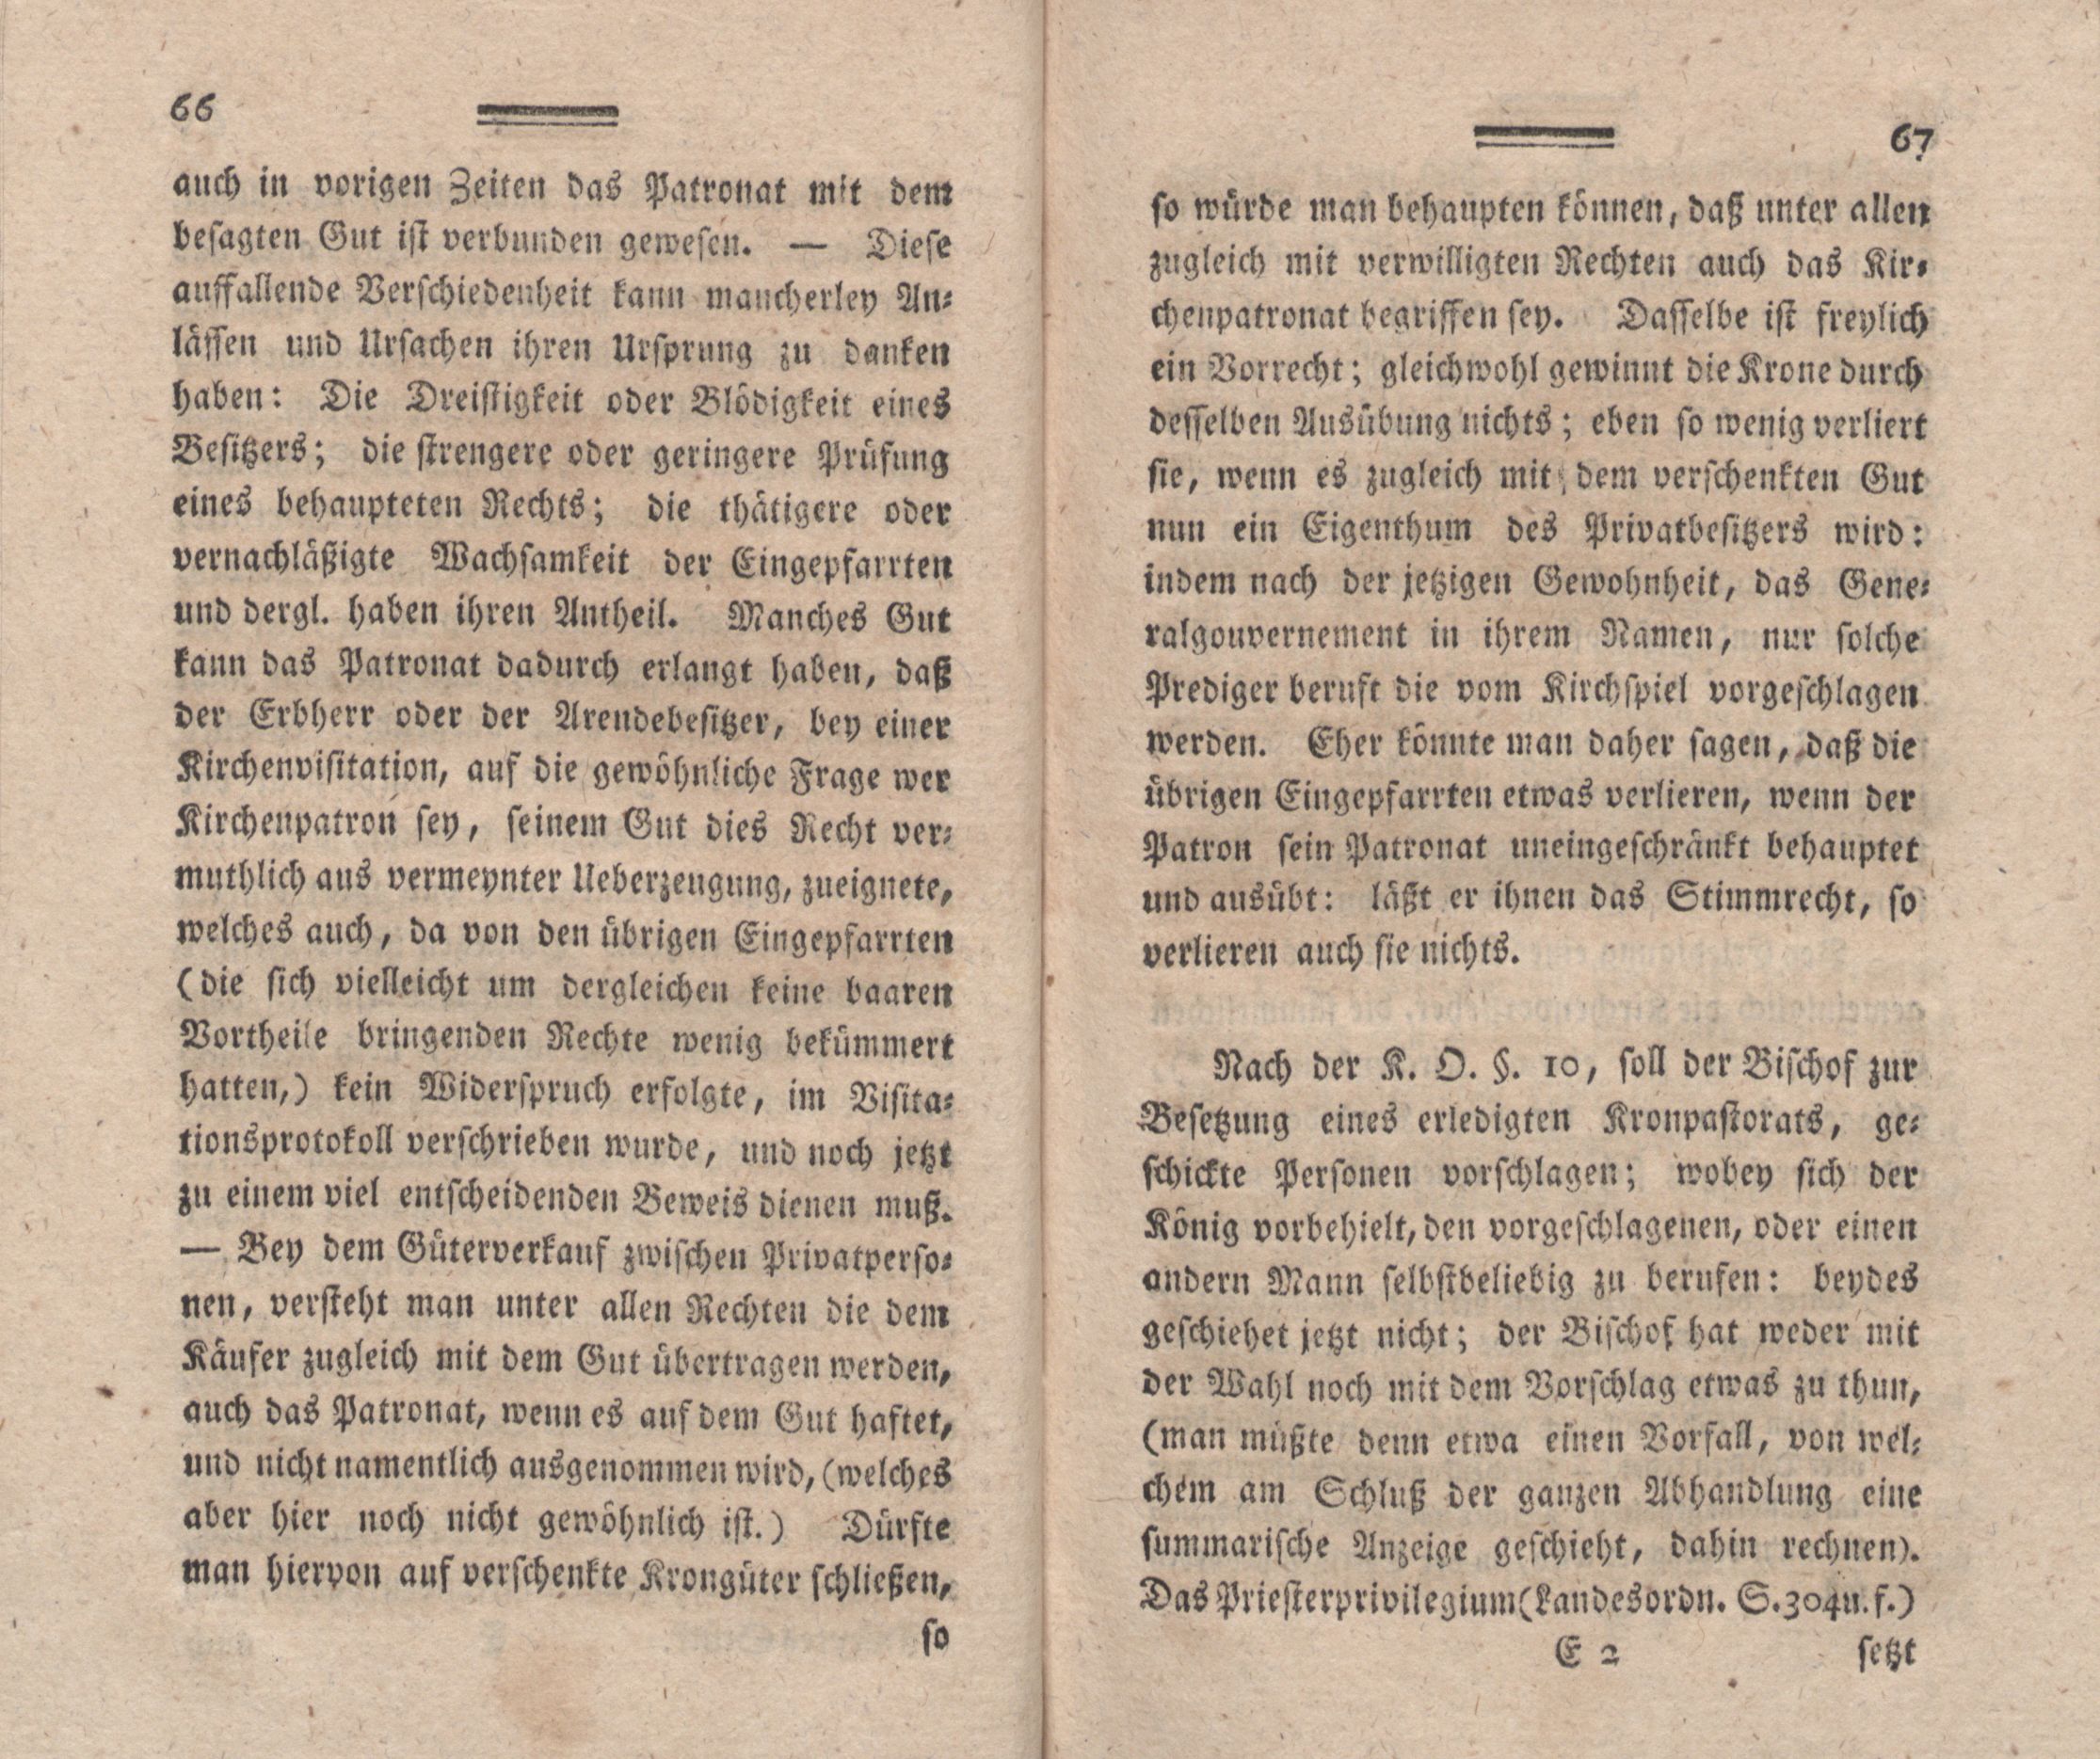 Nordische Miscellaneen [02] (1781) | 34. (66-67) Main body of text